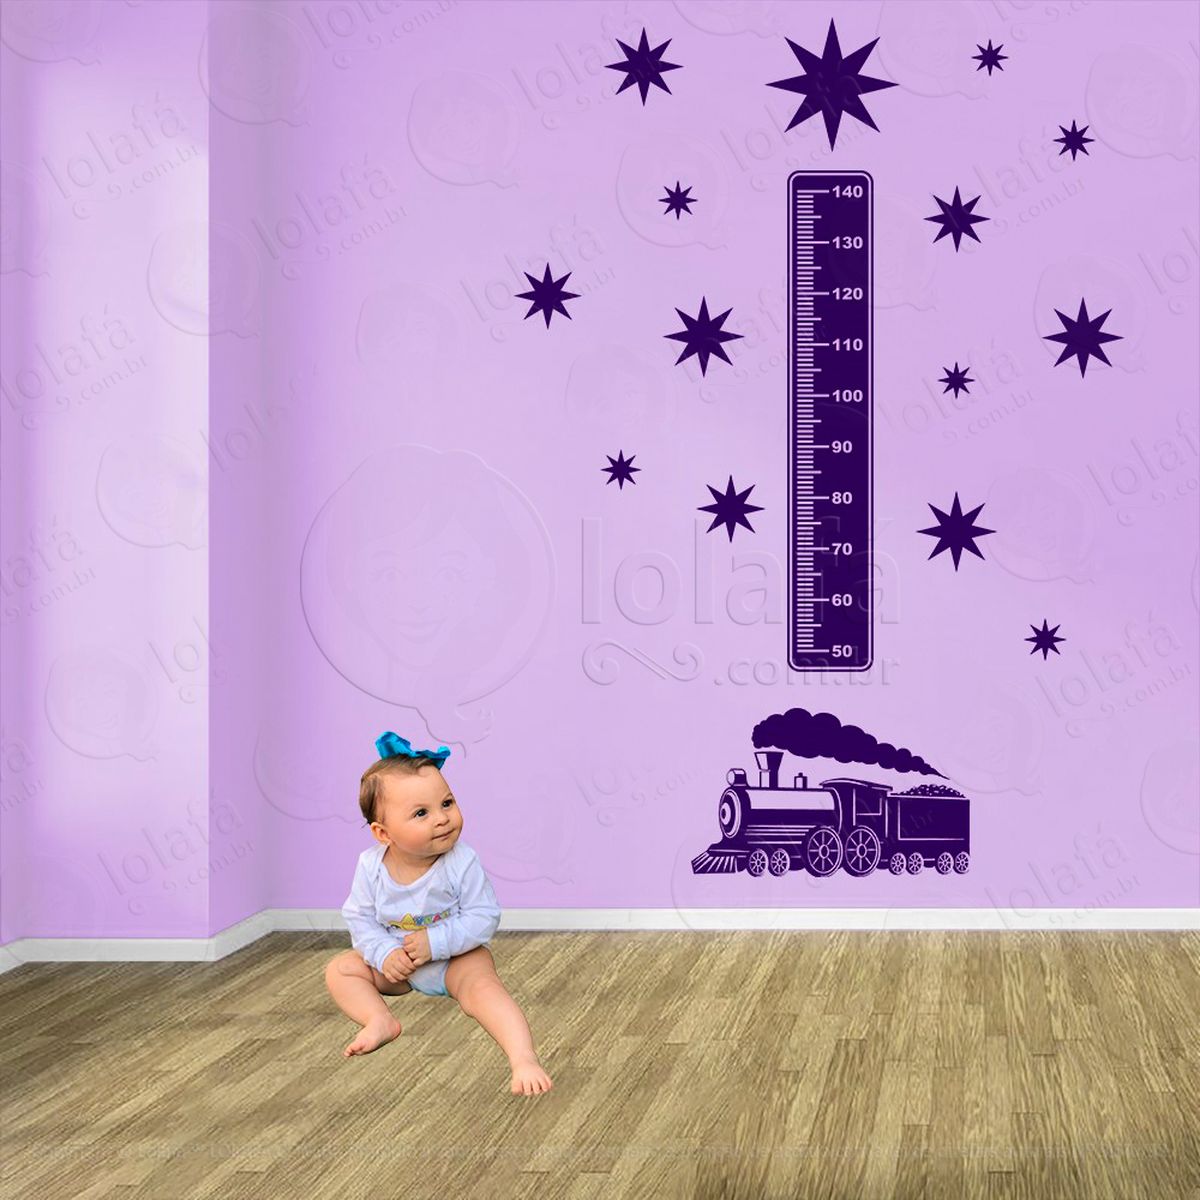 trêm e estrelas adesivo régua de crescimento infantil, medidor de altura para quarto, porta e parede - mod:1519